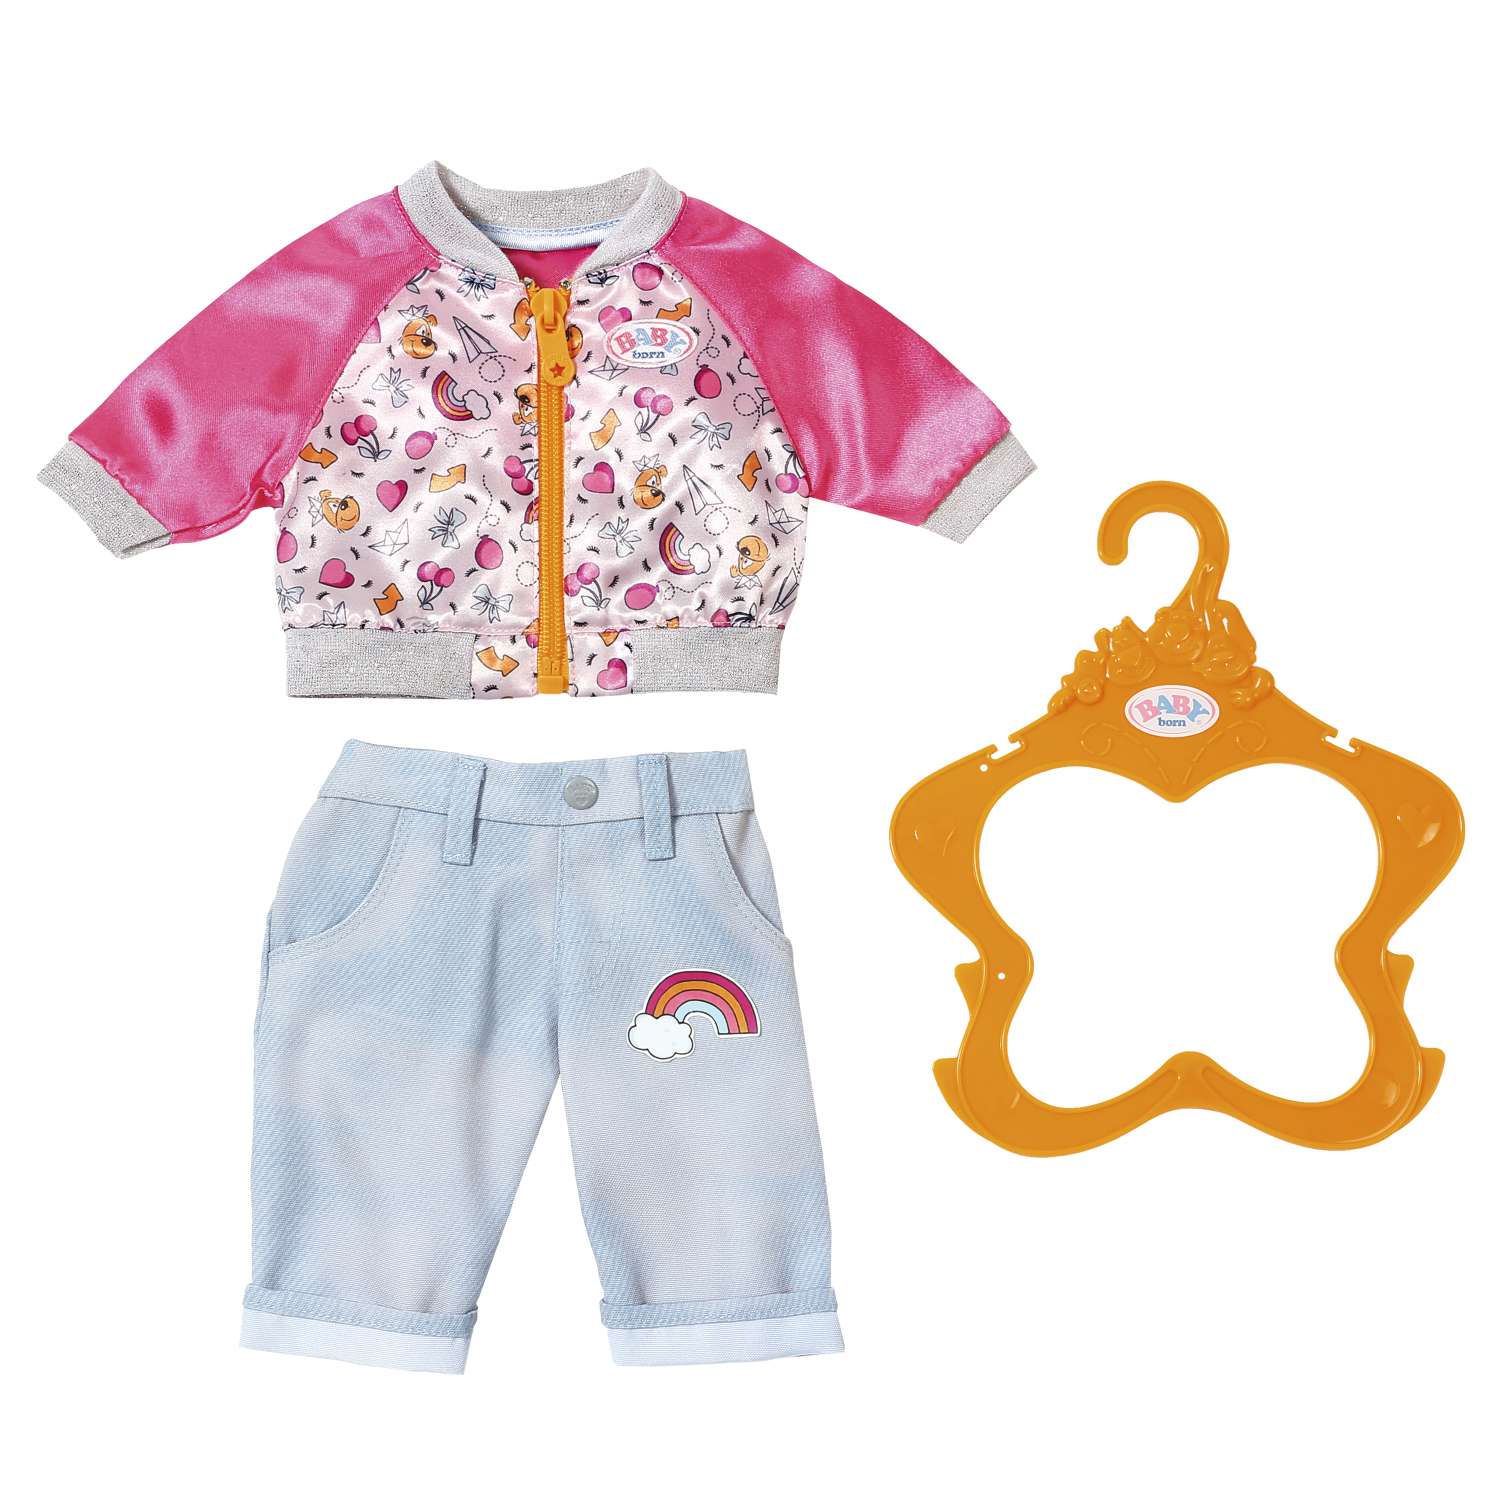 Одежда для кукол Zapf Creation Baby born Штанишки и кофточка для прогулки Голубые 824-542B 824-542B - фото 2